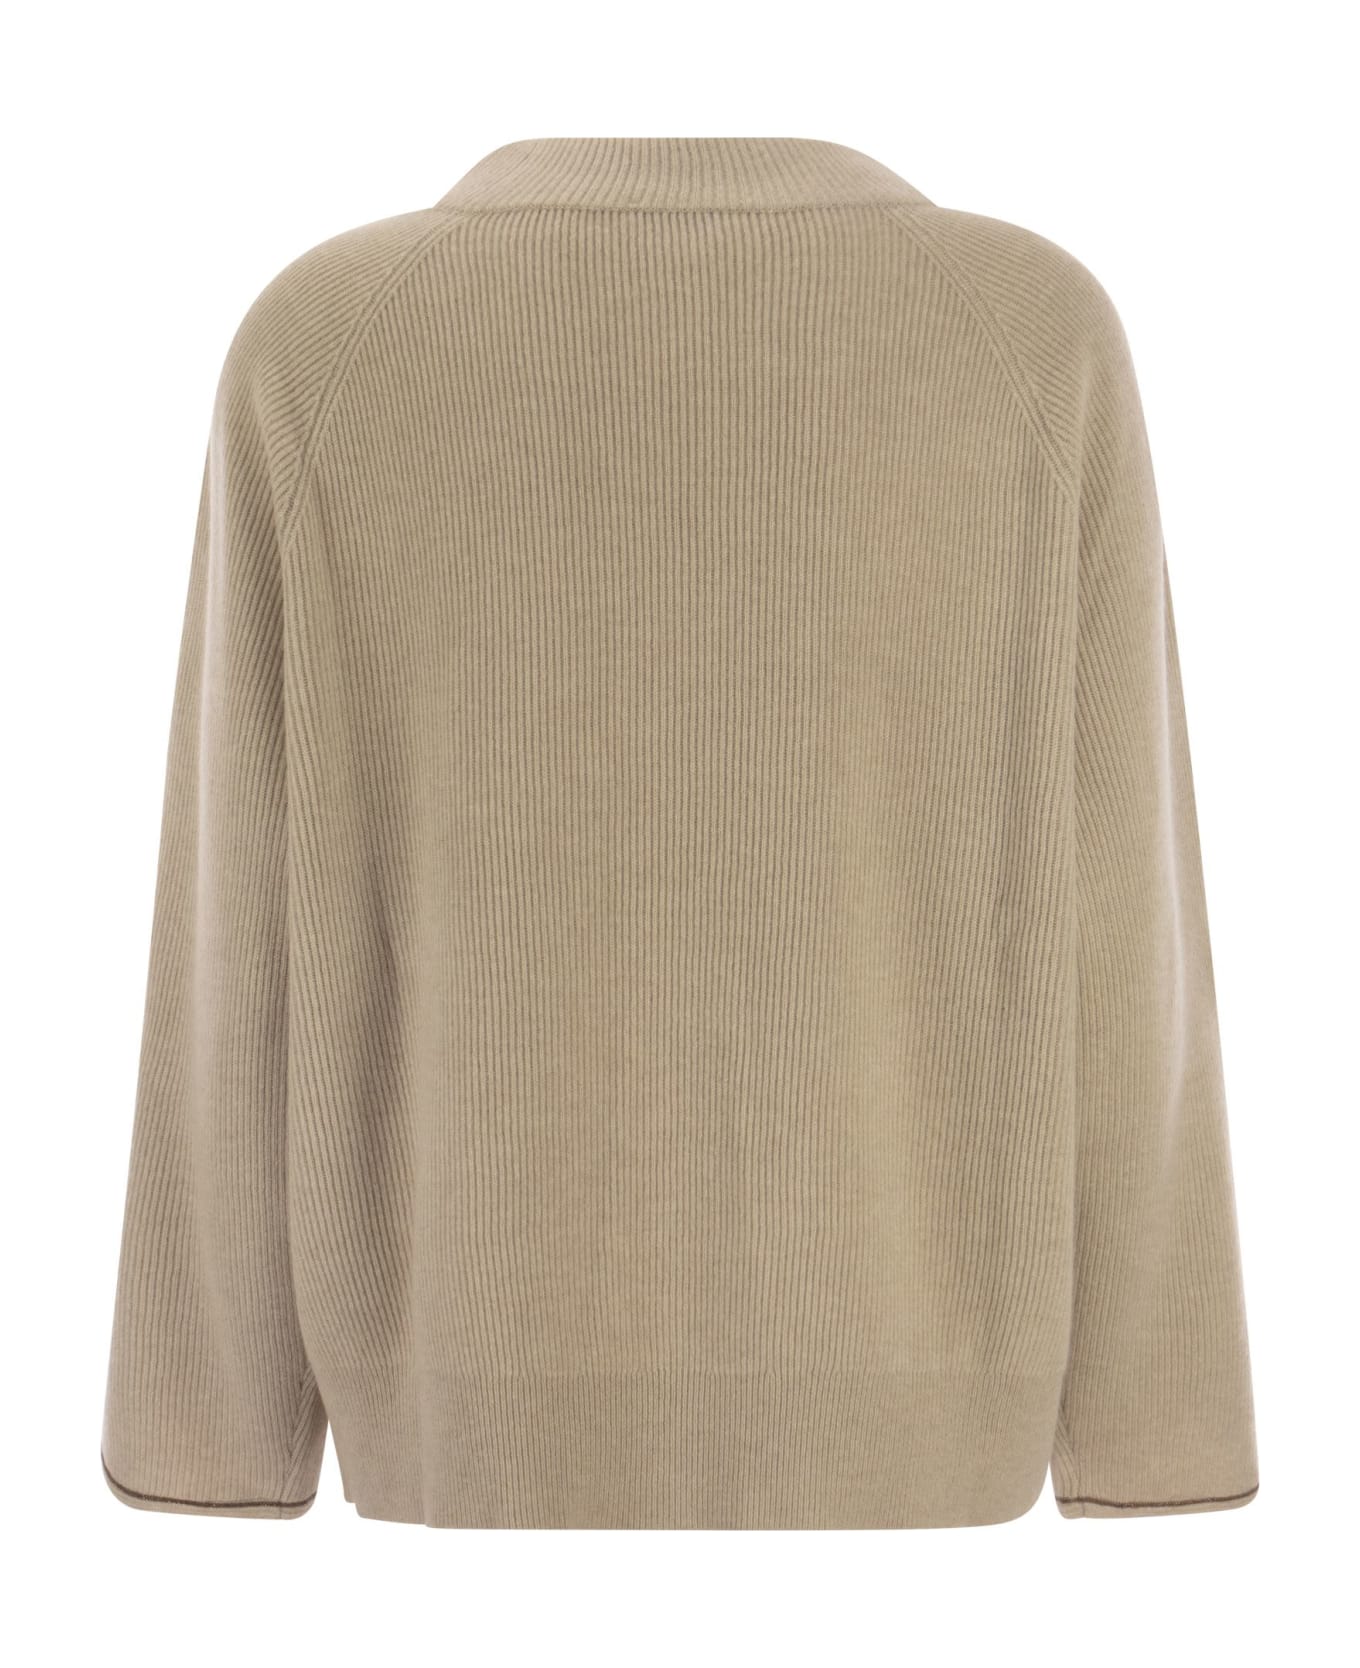 Brunello Cucinelli Cashmere Sweater With Monile - Sand